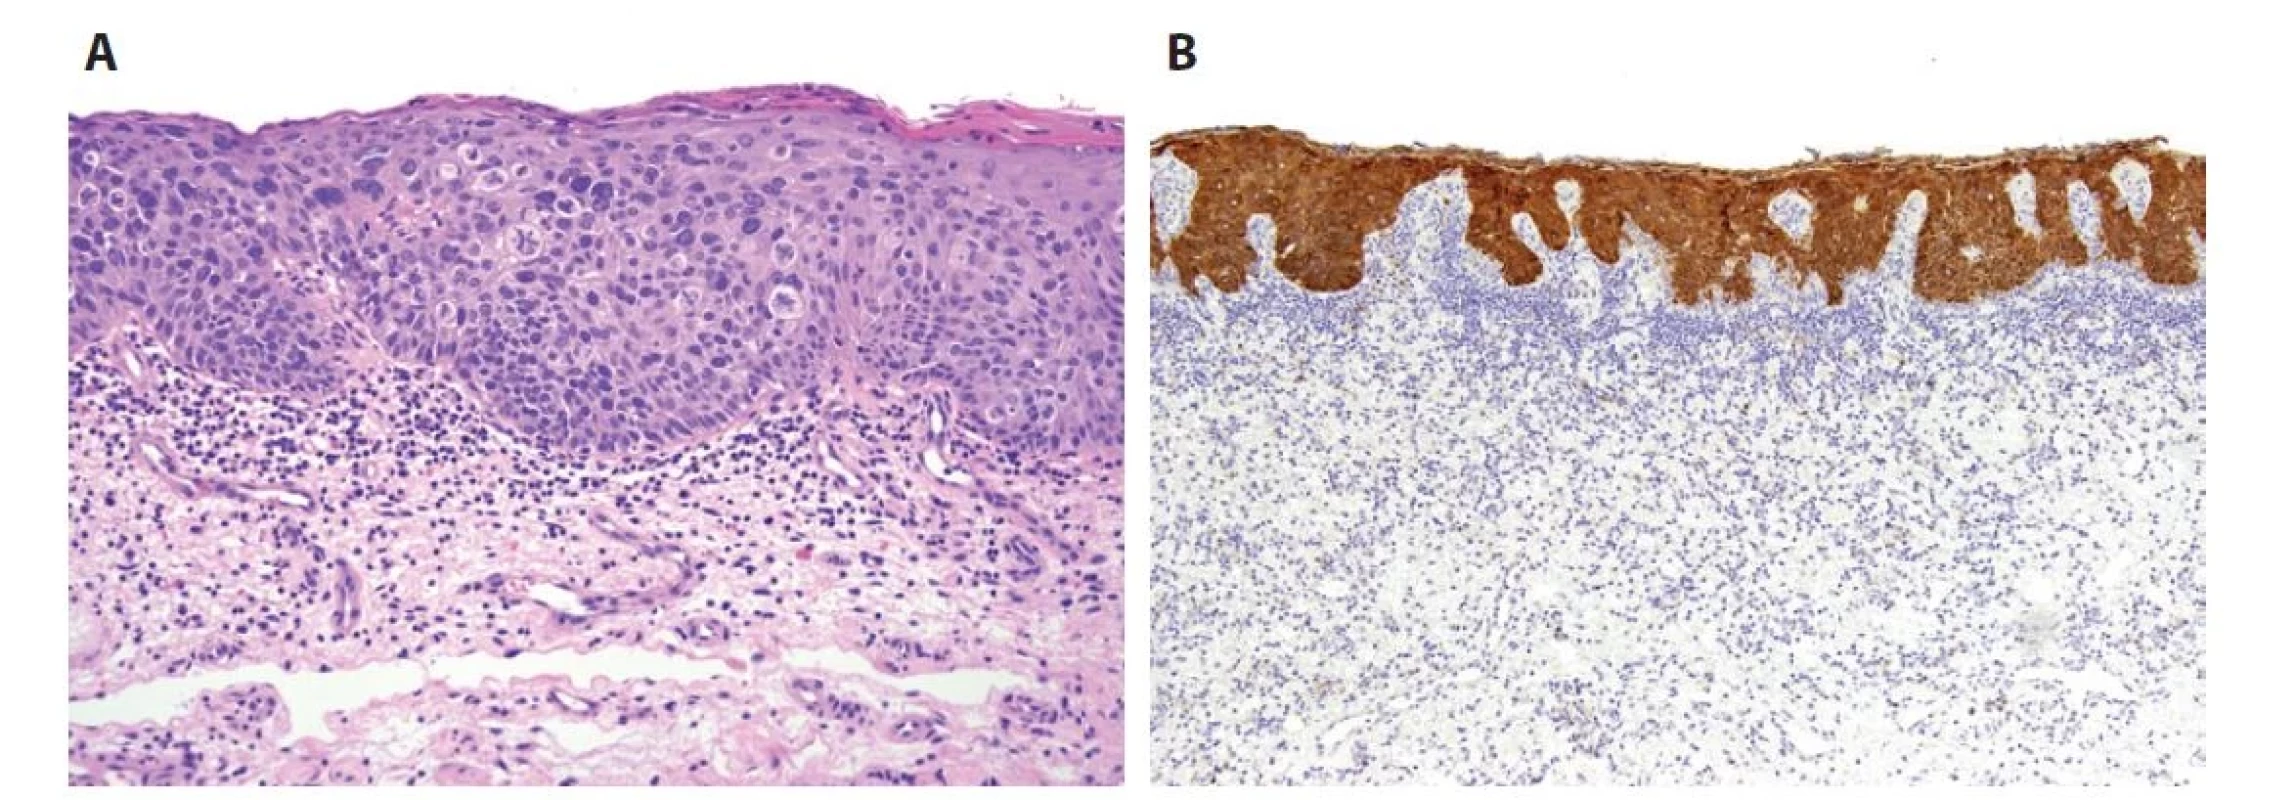 HSIL je v typickém případě identický HPV–asociovaným in situ lézím děložního čípku, vulvy či anu. Buňky povrchového epitelu vykazují
ztrátu stratifikace, nukleární atypie, zvýšený nukleocytoplazmatický poměr a mitotickou aktivitu (včetně atypických mitóz). Tyto změny se v případě
PeIN3 vyskytují v celé tloušťce epitelu (A). Diagnózu HPV-indukované léze potvrzuje silná bloková cytoplazmatická a nukleární pozitivita
s protilátkou p16 (B).